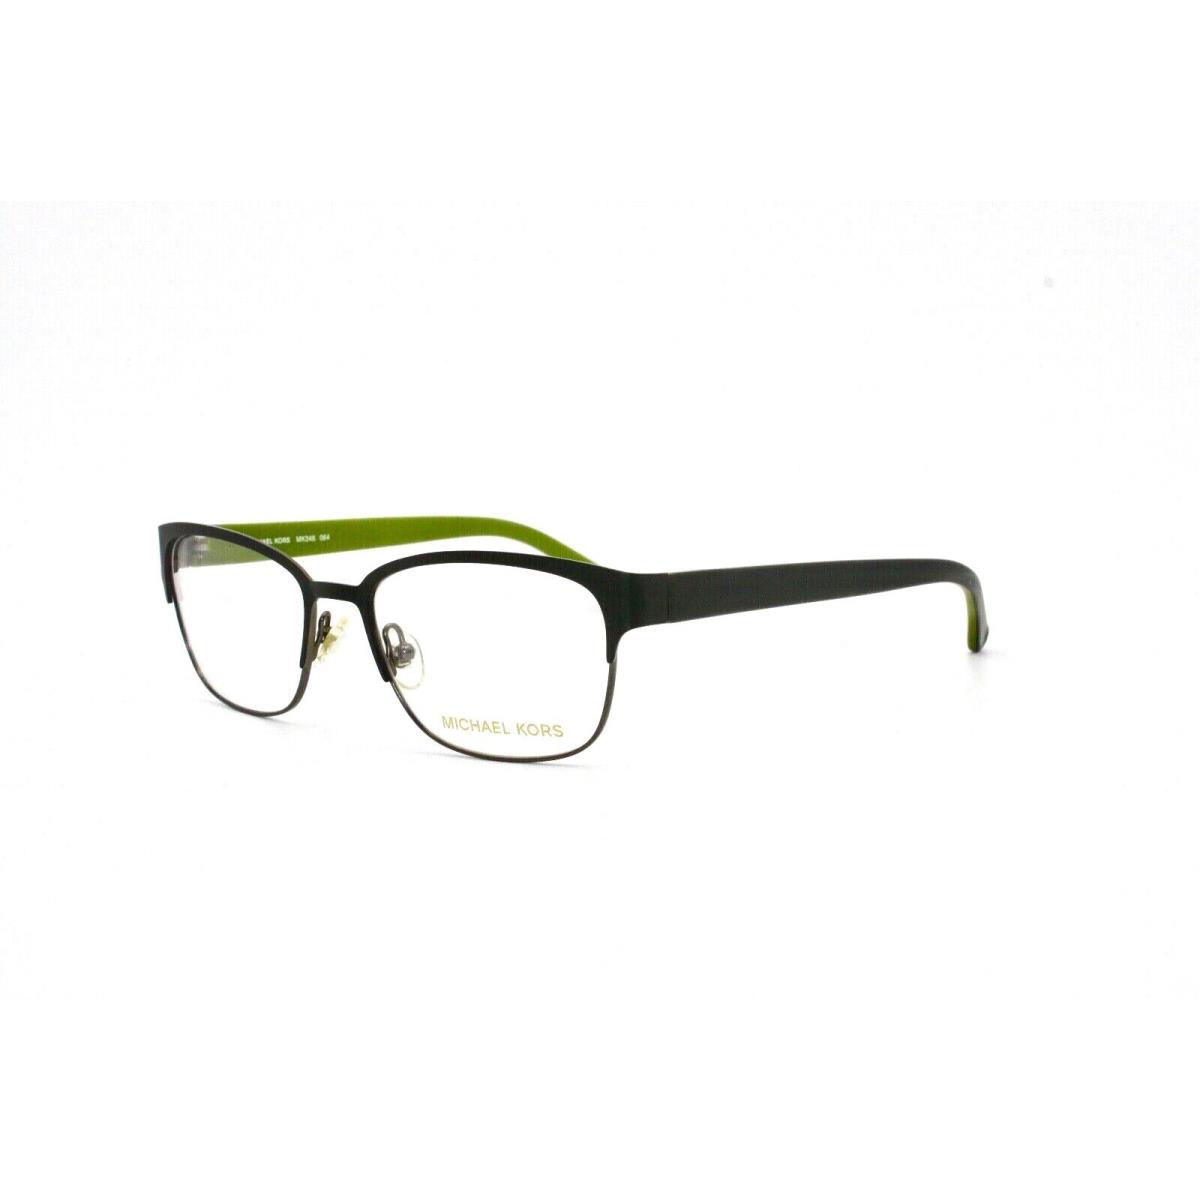 Michael Kors eyeglasses  - Green , Black Frame 0